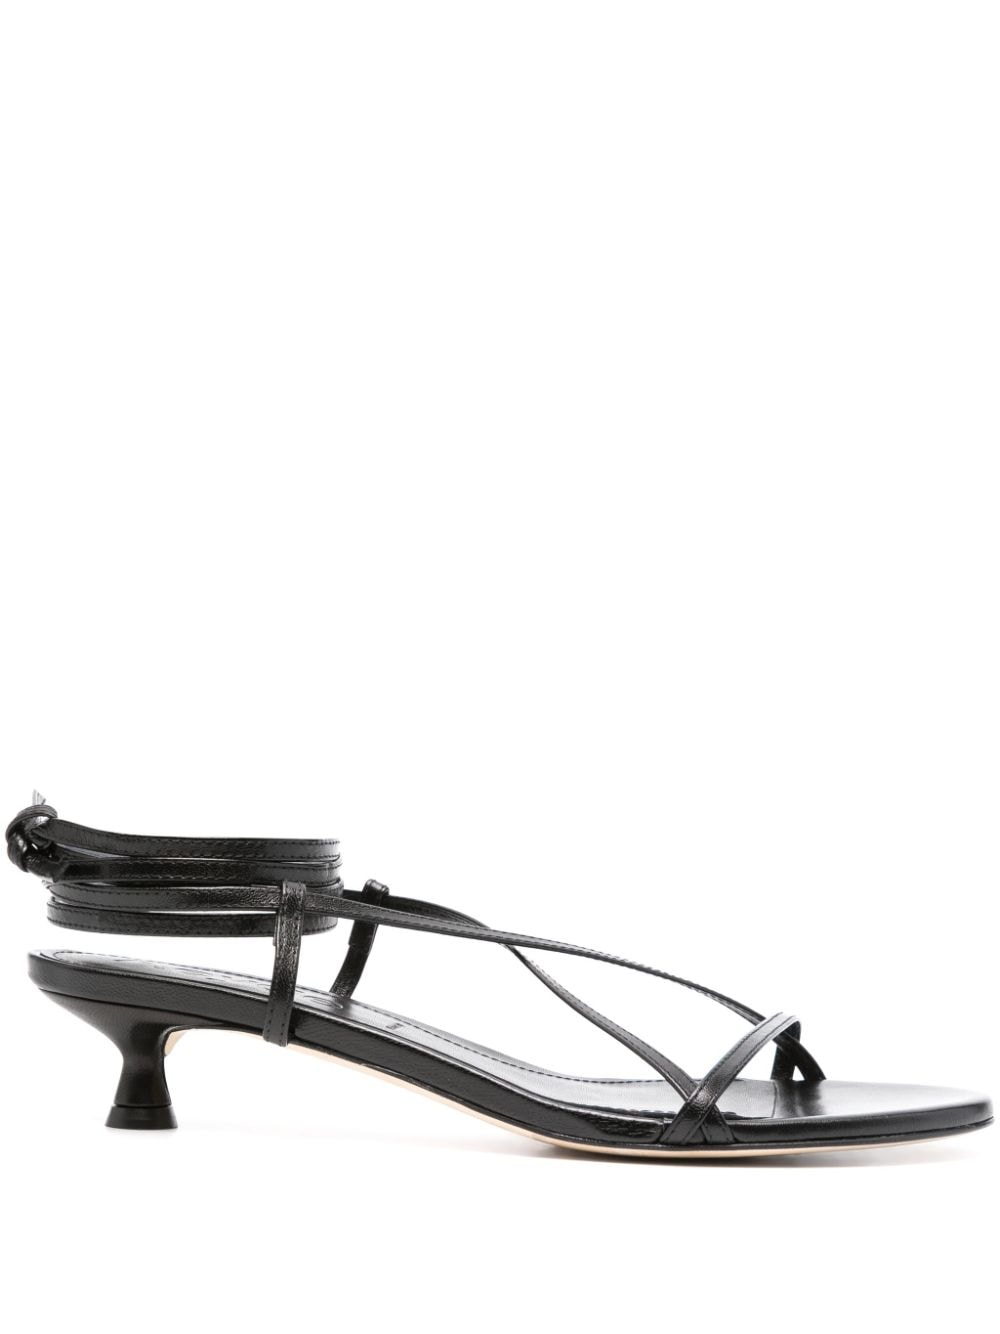 Aeyde Paige 35mm leather sandals - Black von Aeyde